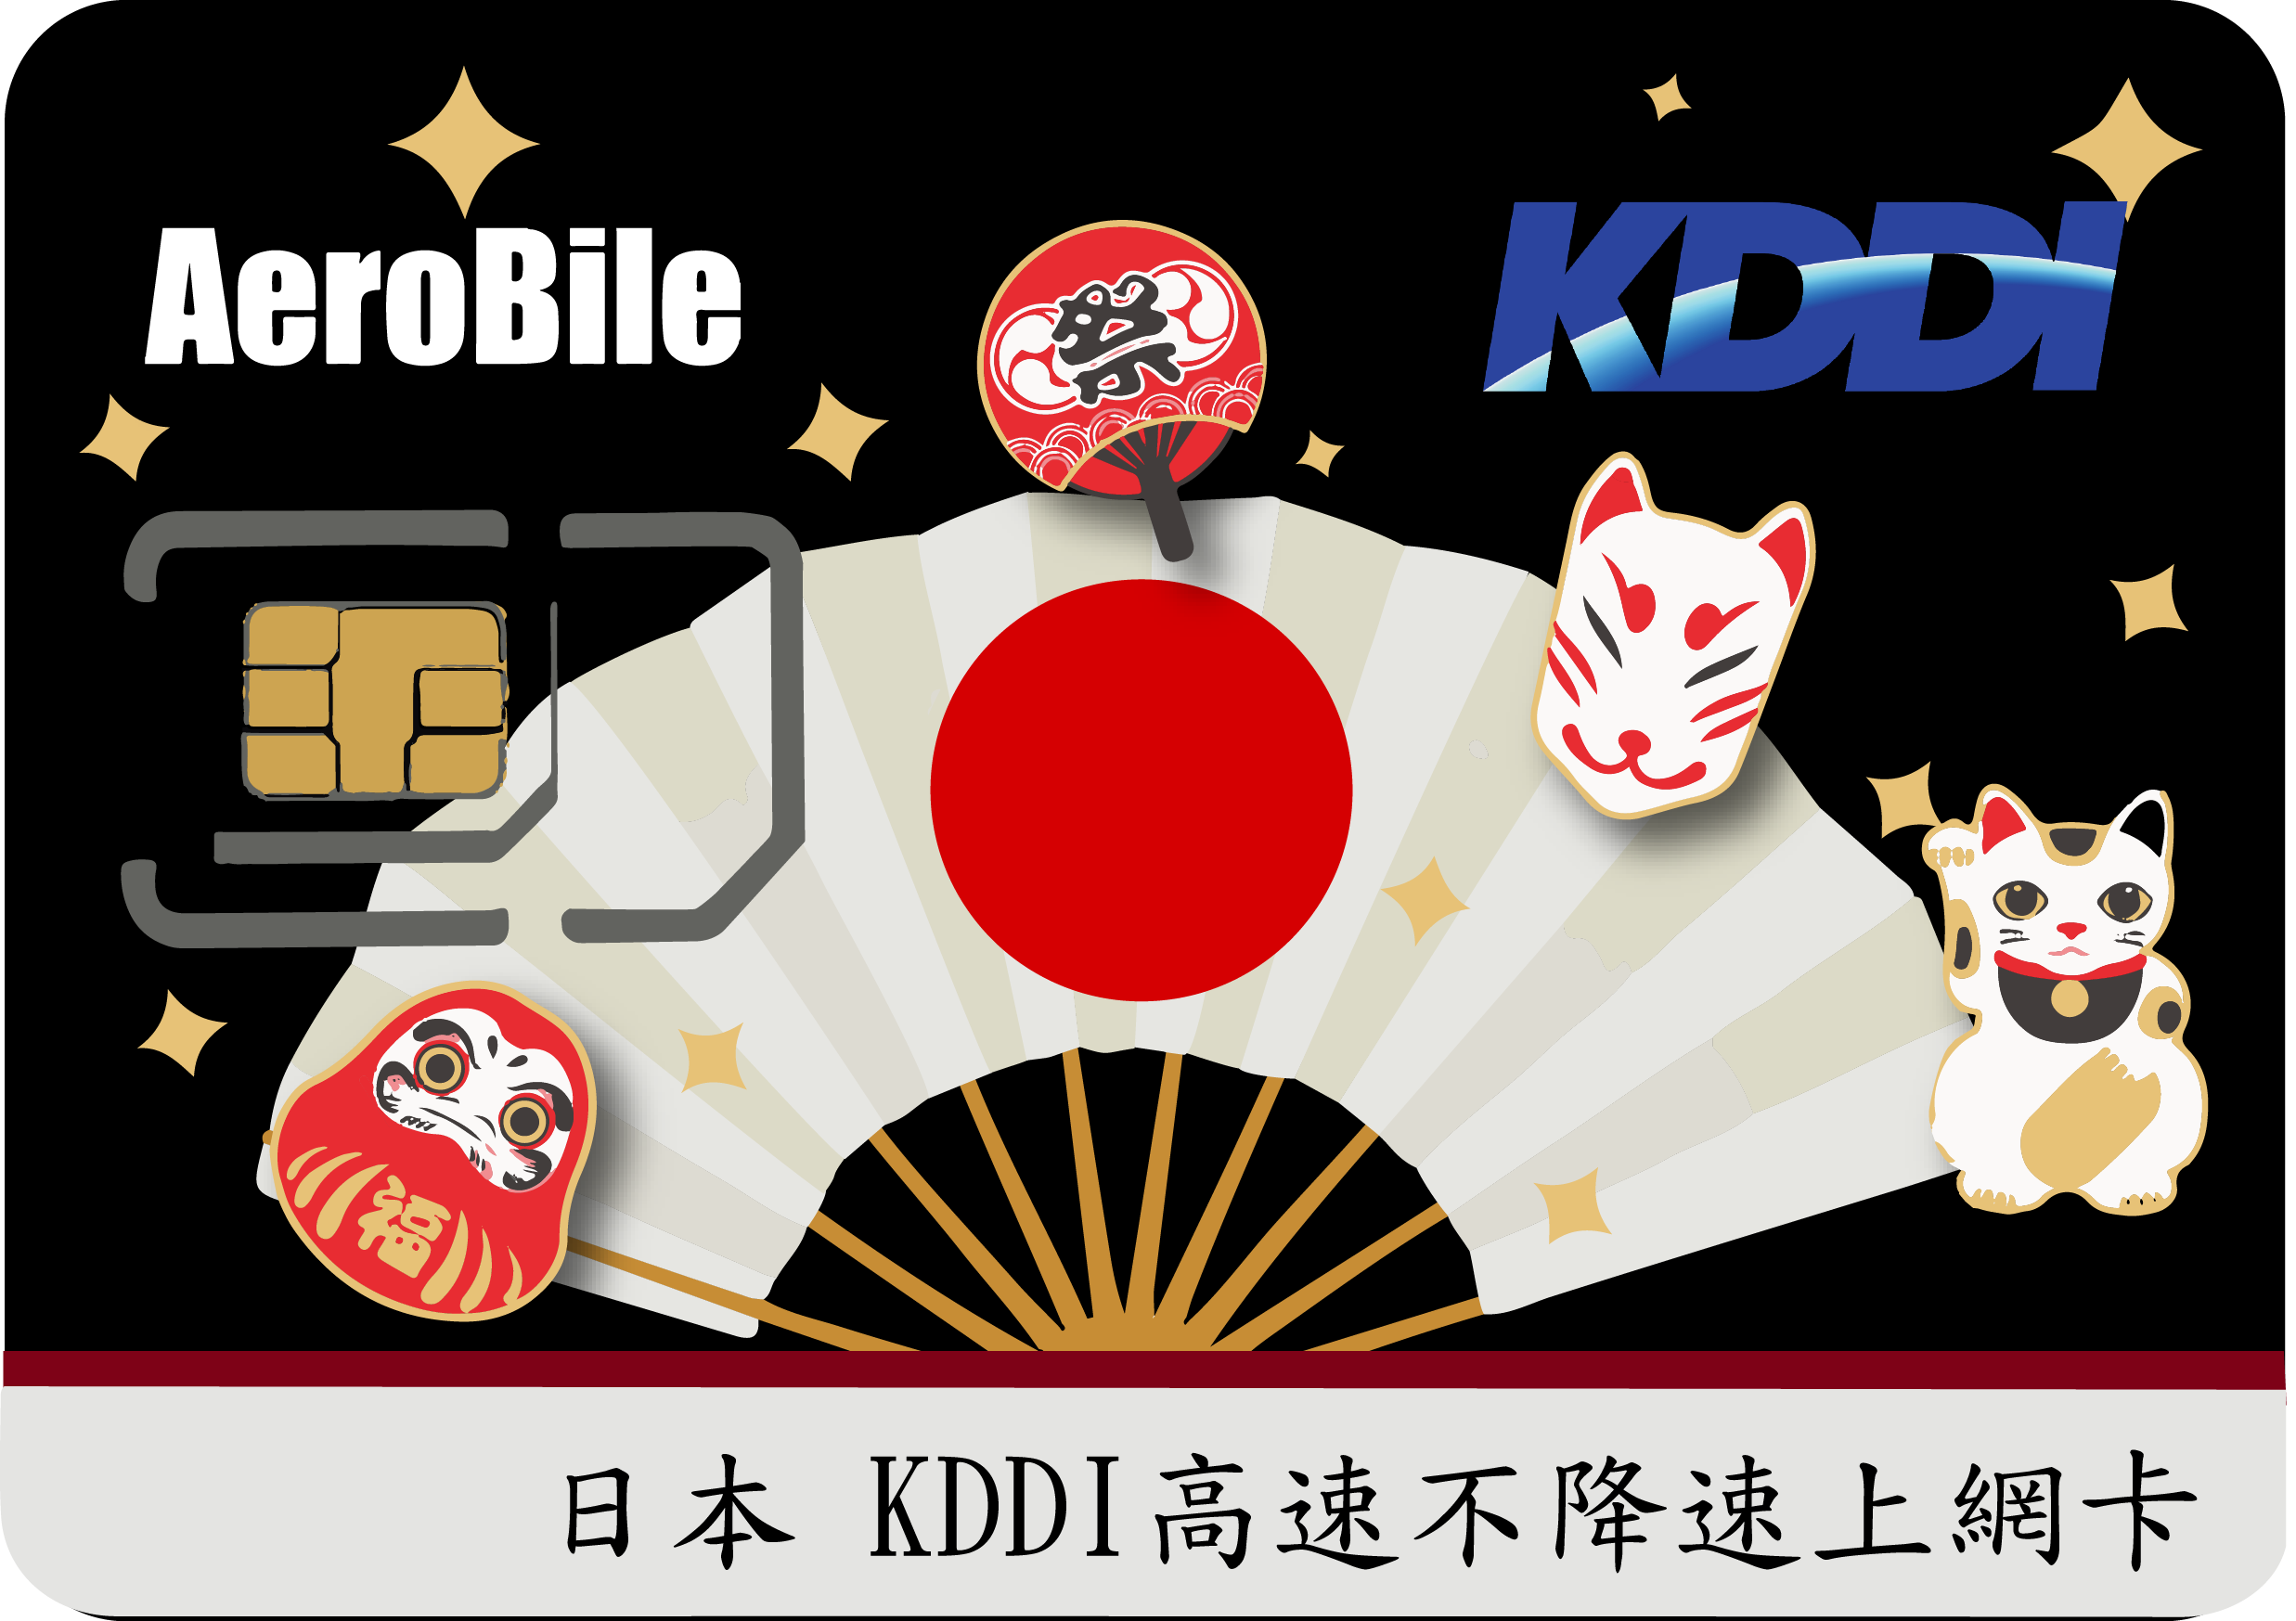 日本上網卡-Kddi(AU)電信高速無限量上網卡(RB)